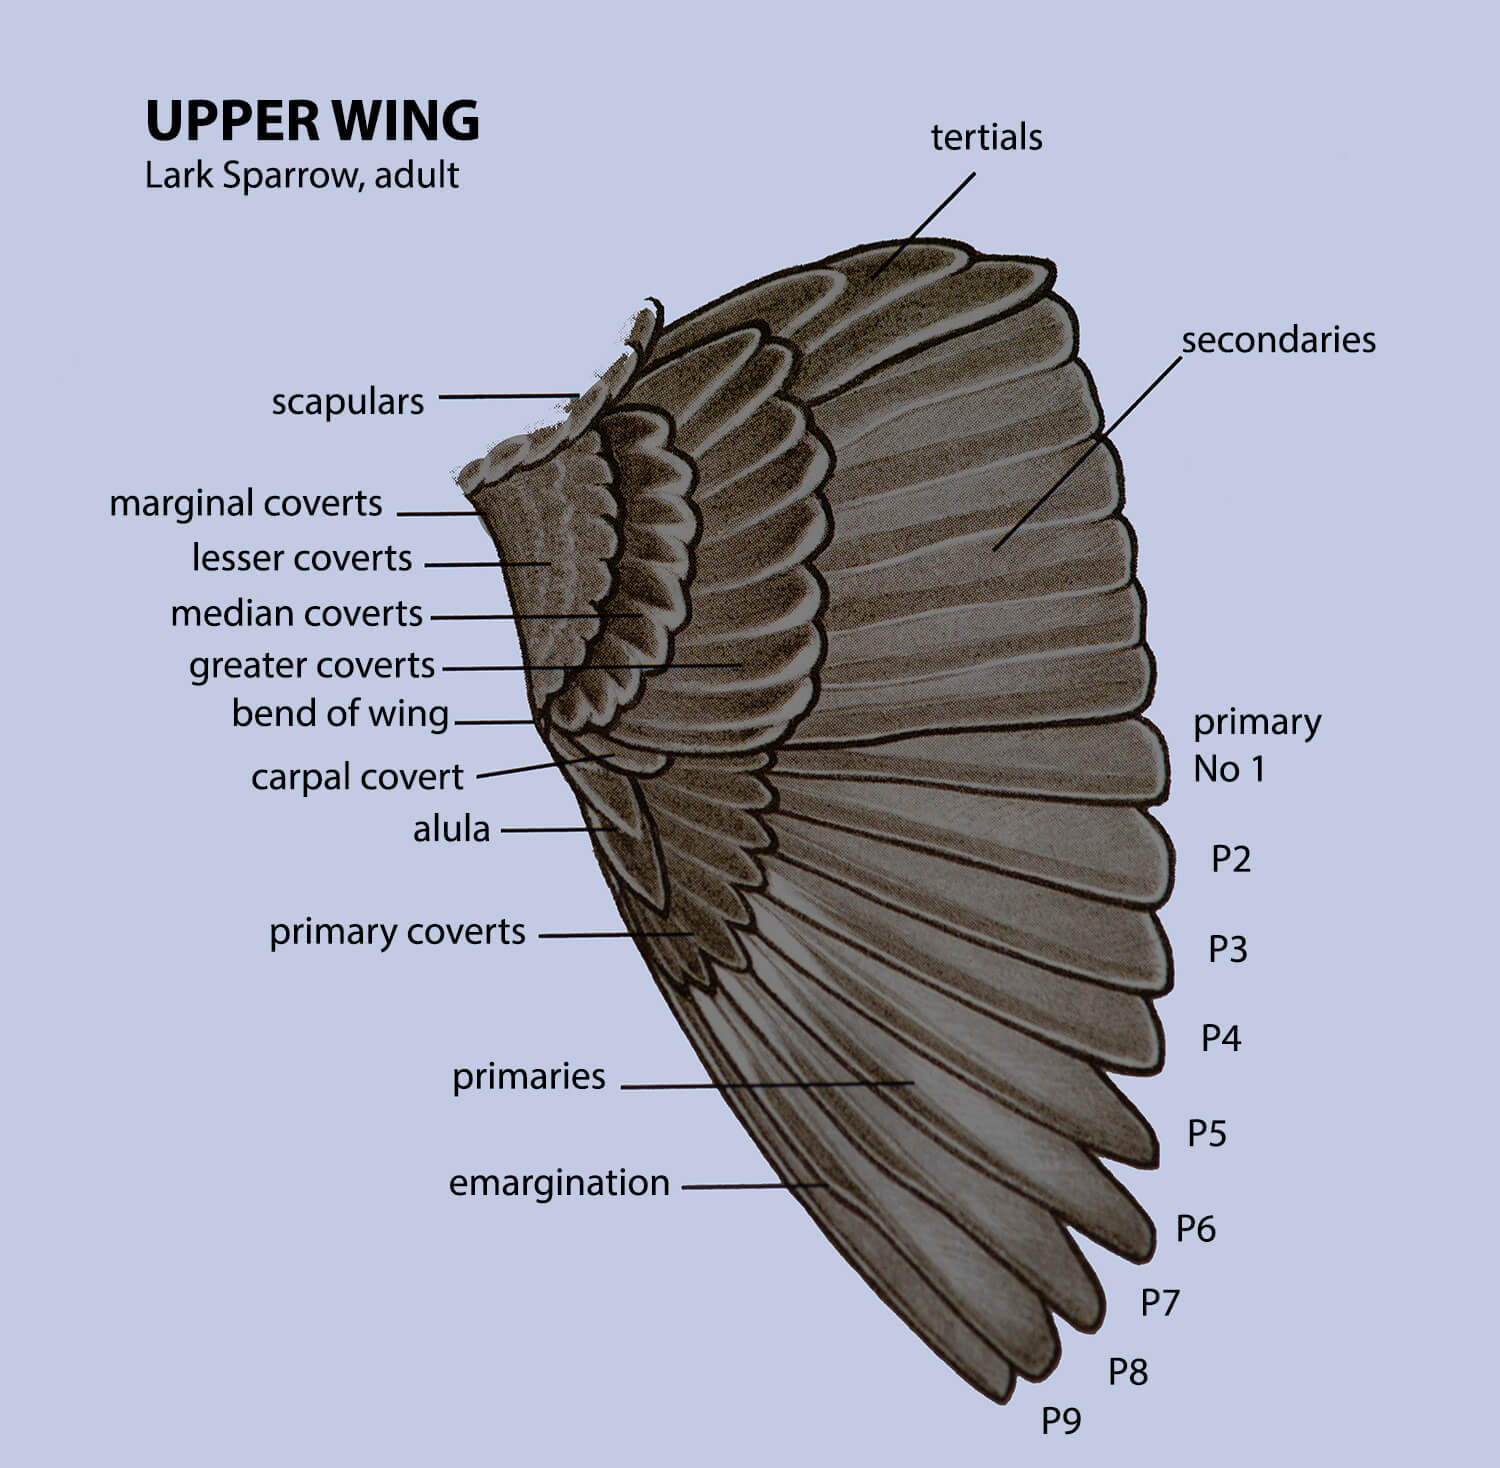 Upper wing 